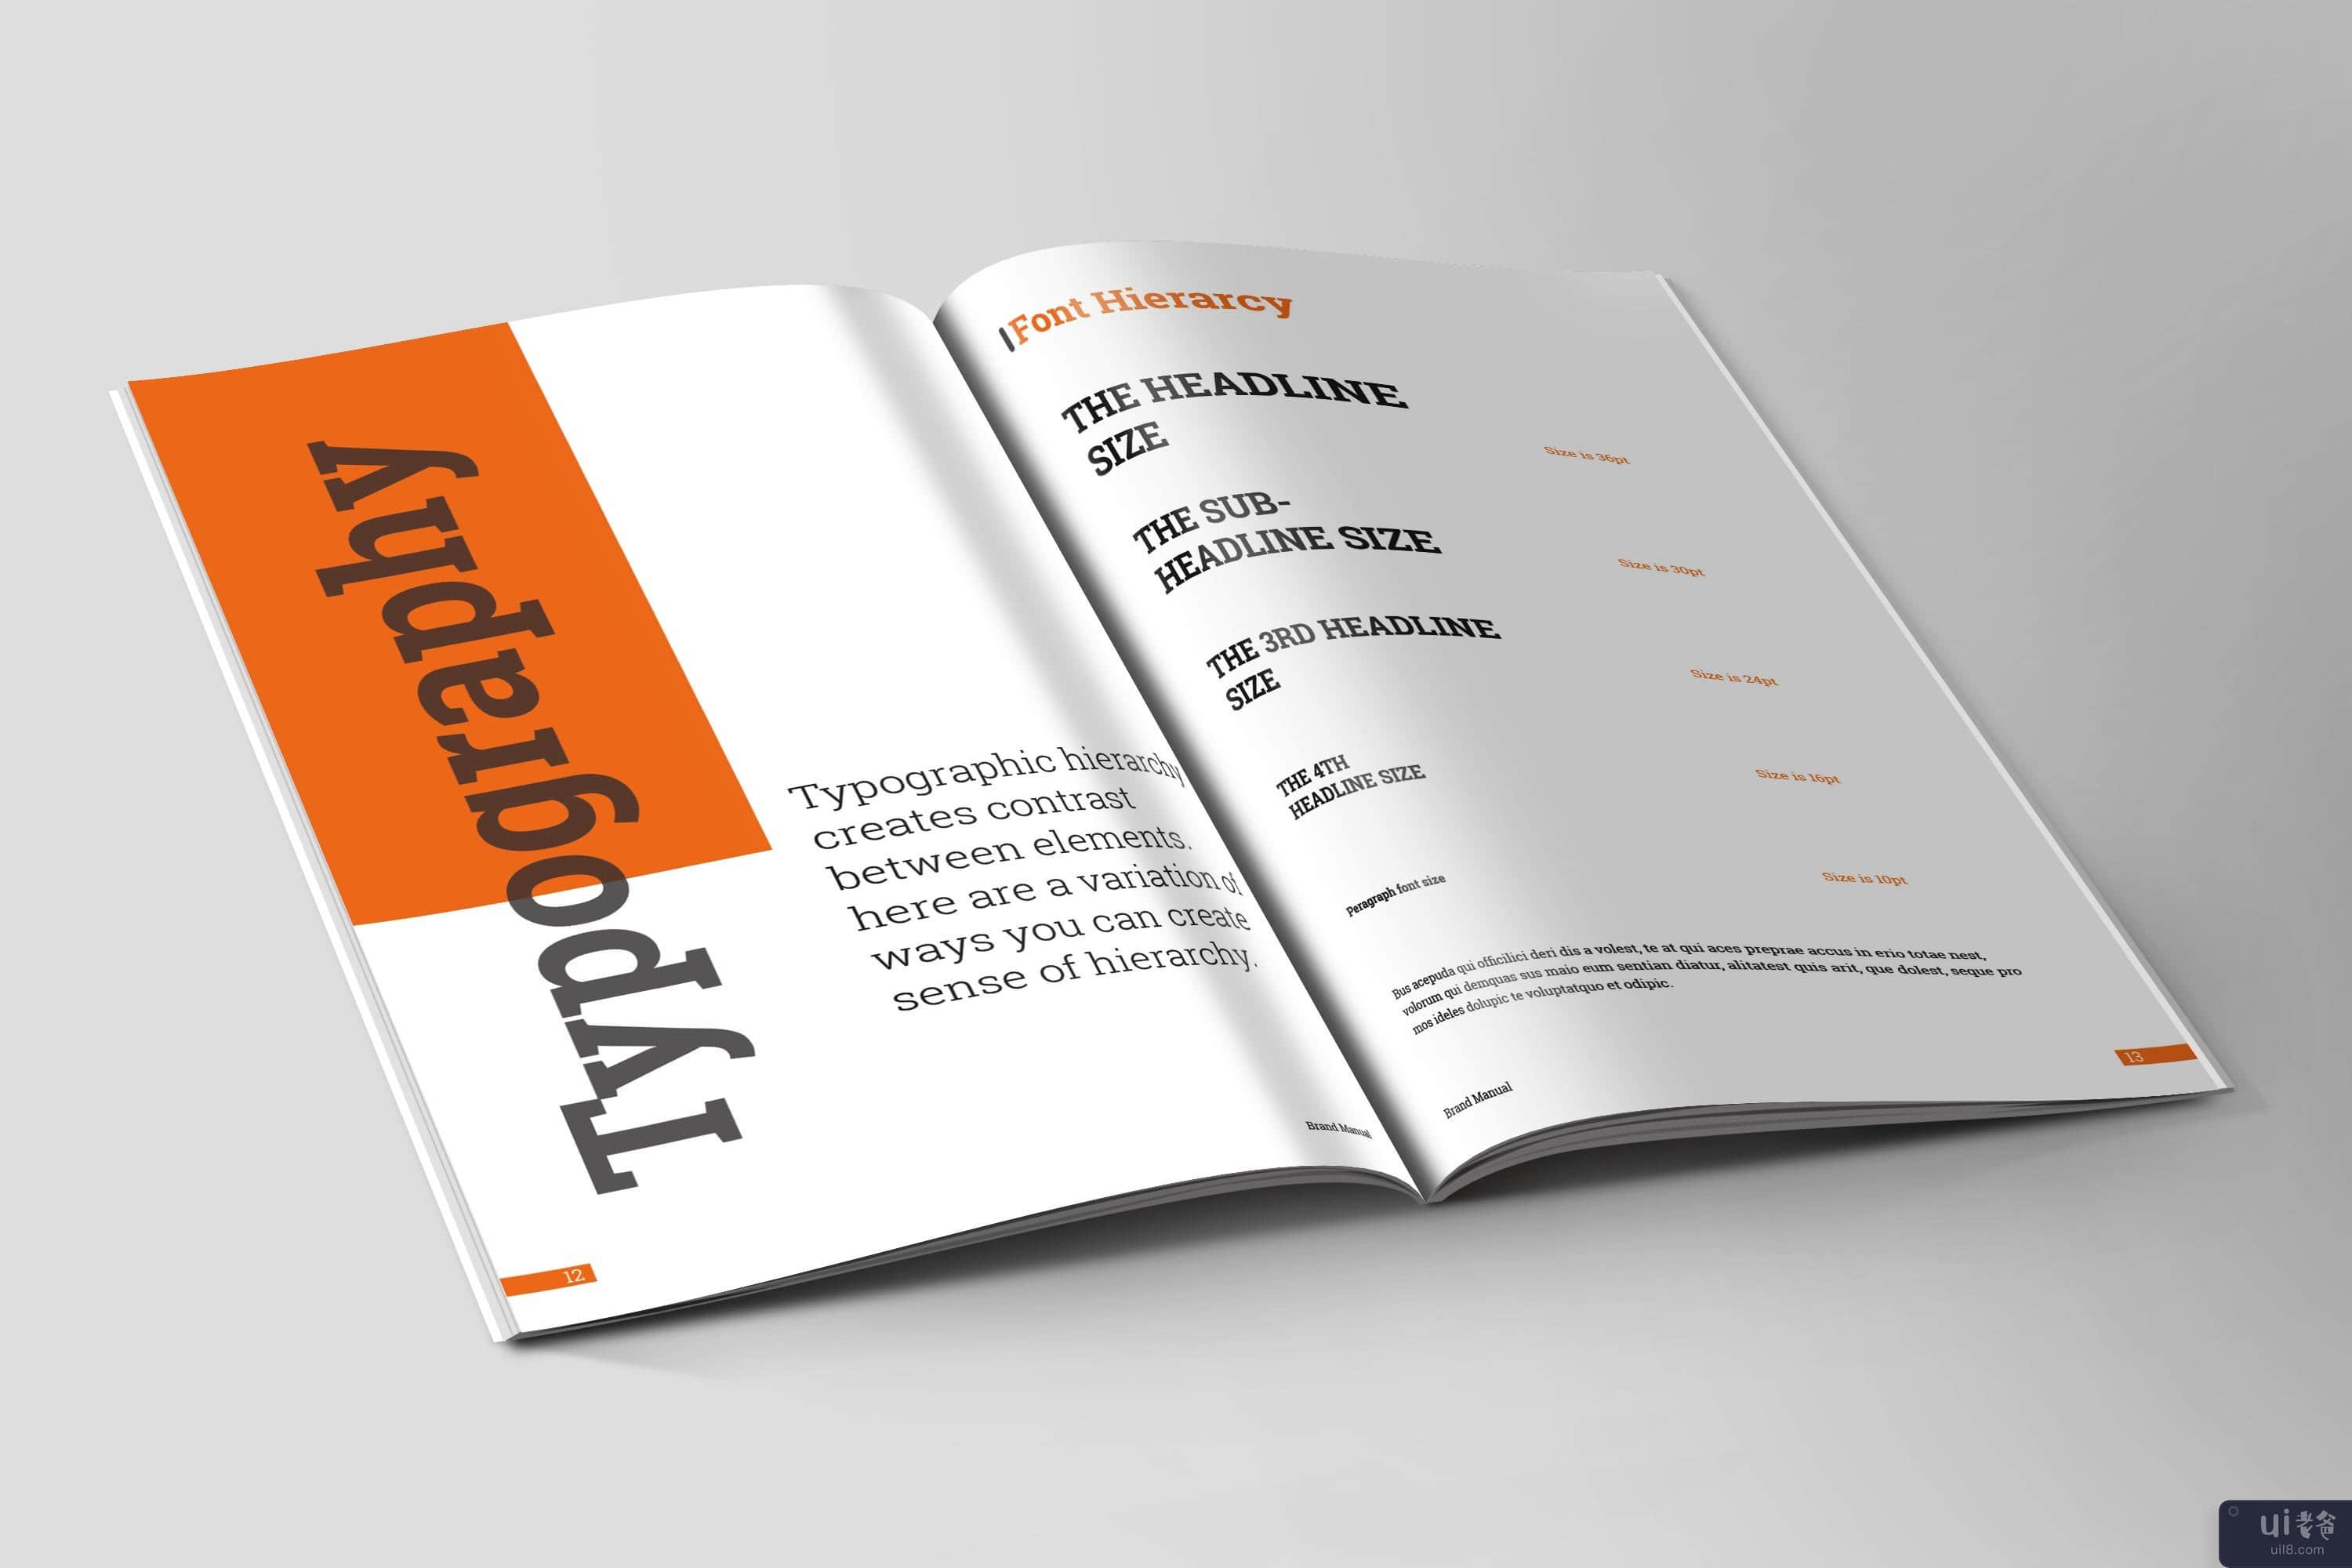 品牌手册指南 | InDesign 模板(Brand Manual Guideline | InDesign Template)插图3